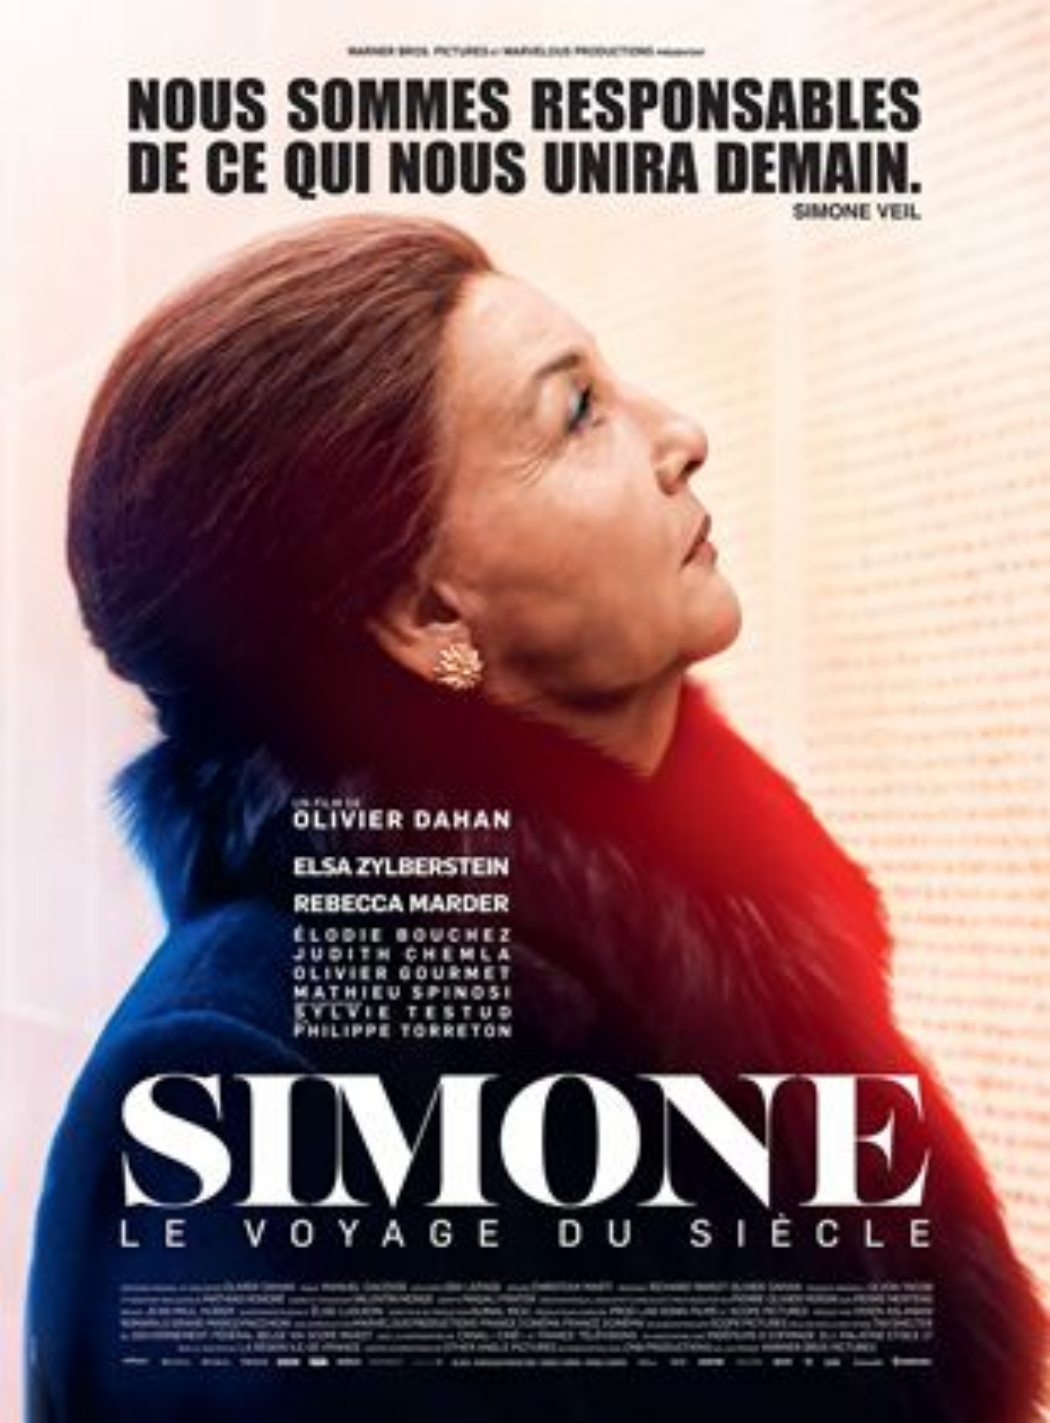 Simone, le voyage du siècle : un film de propagande